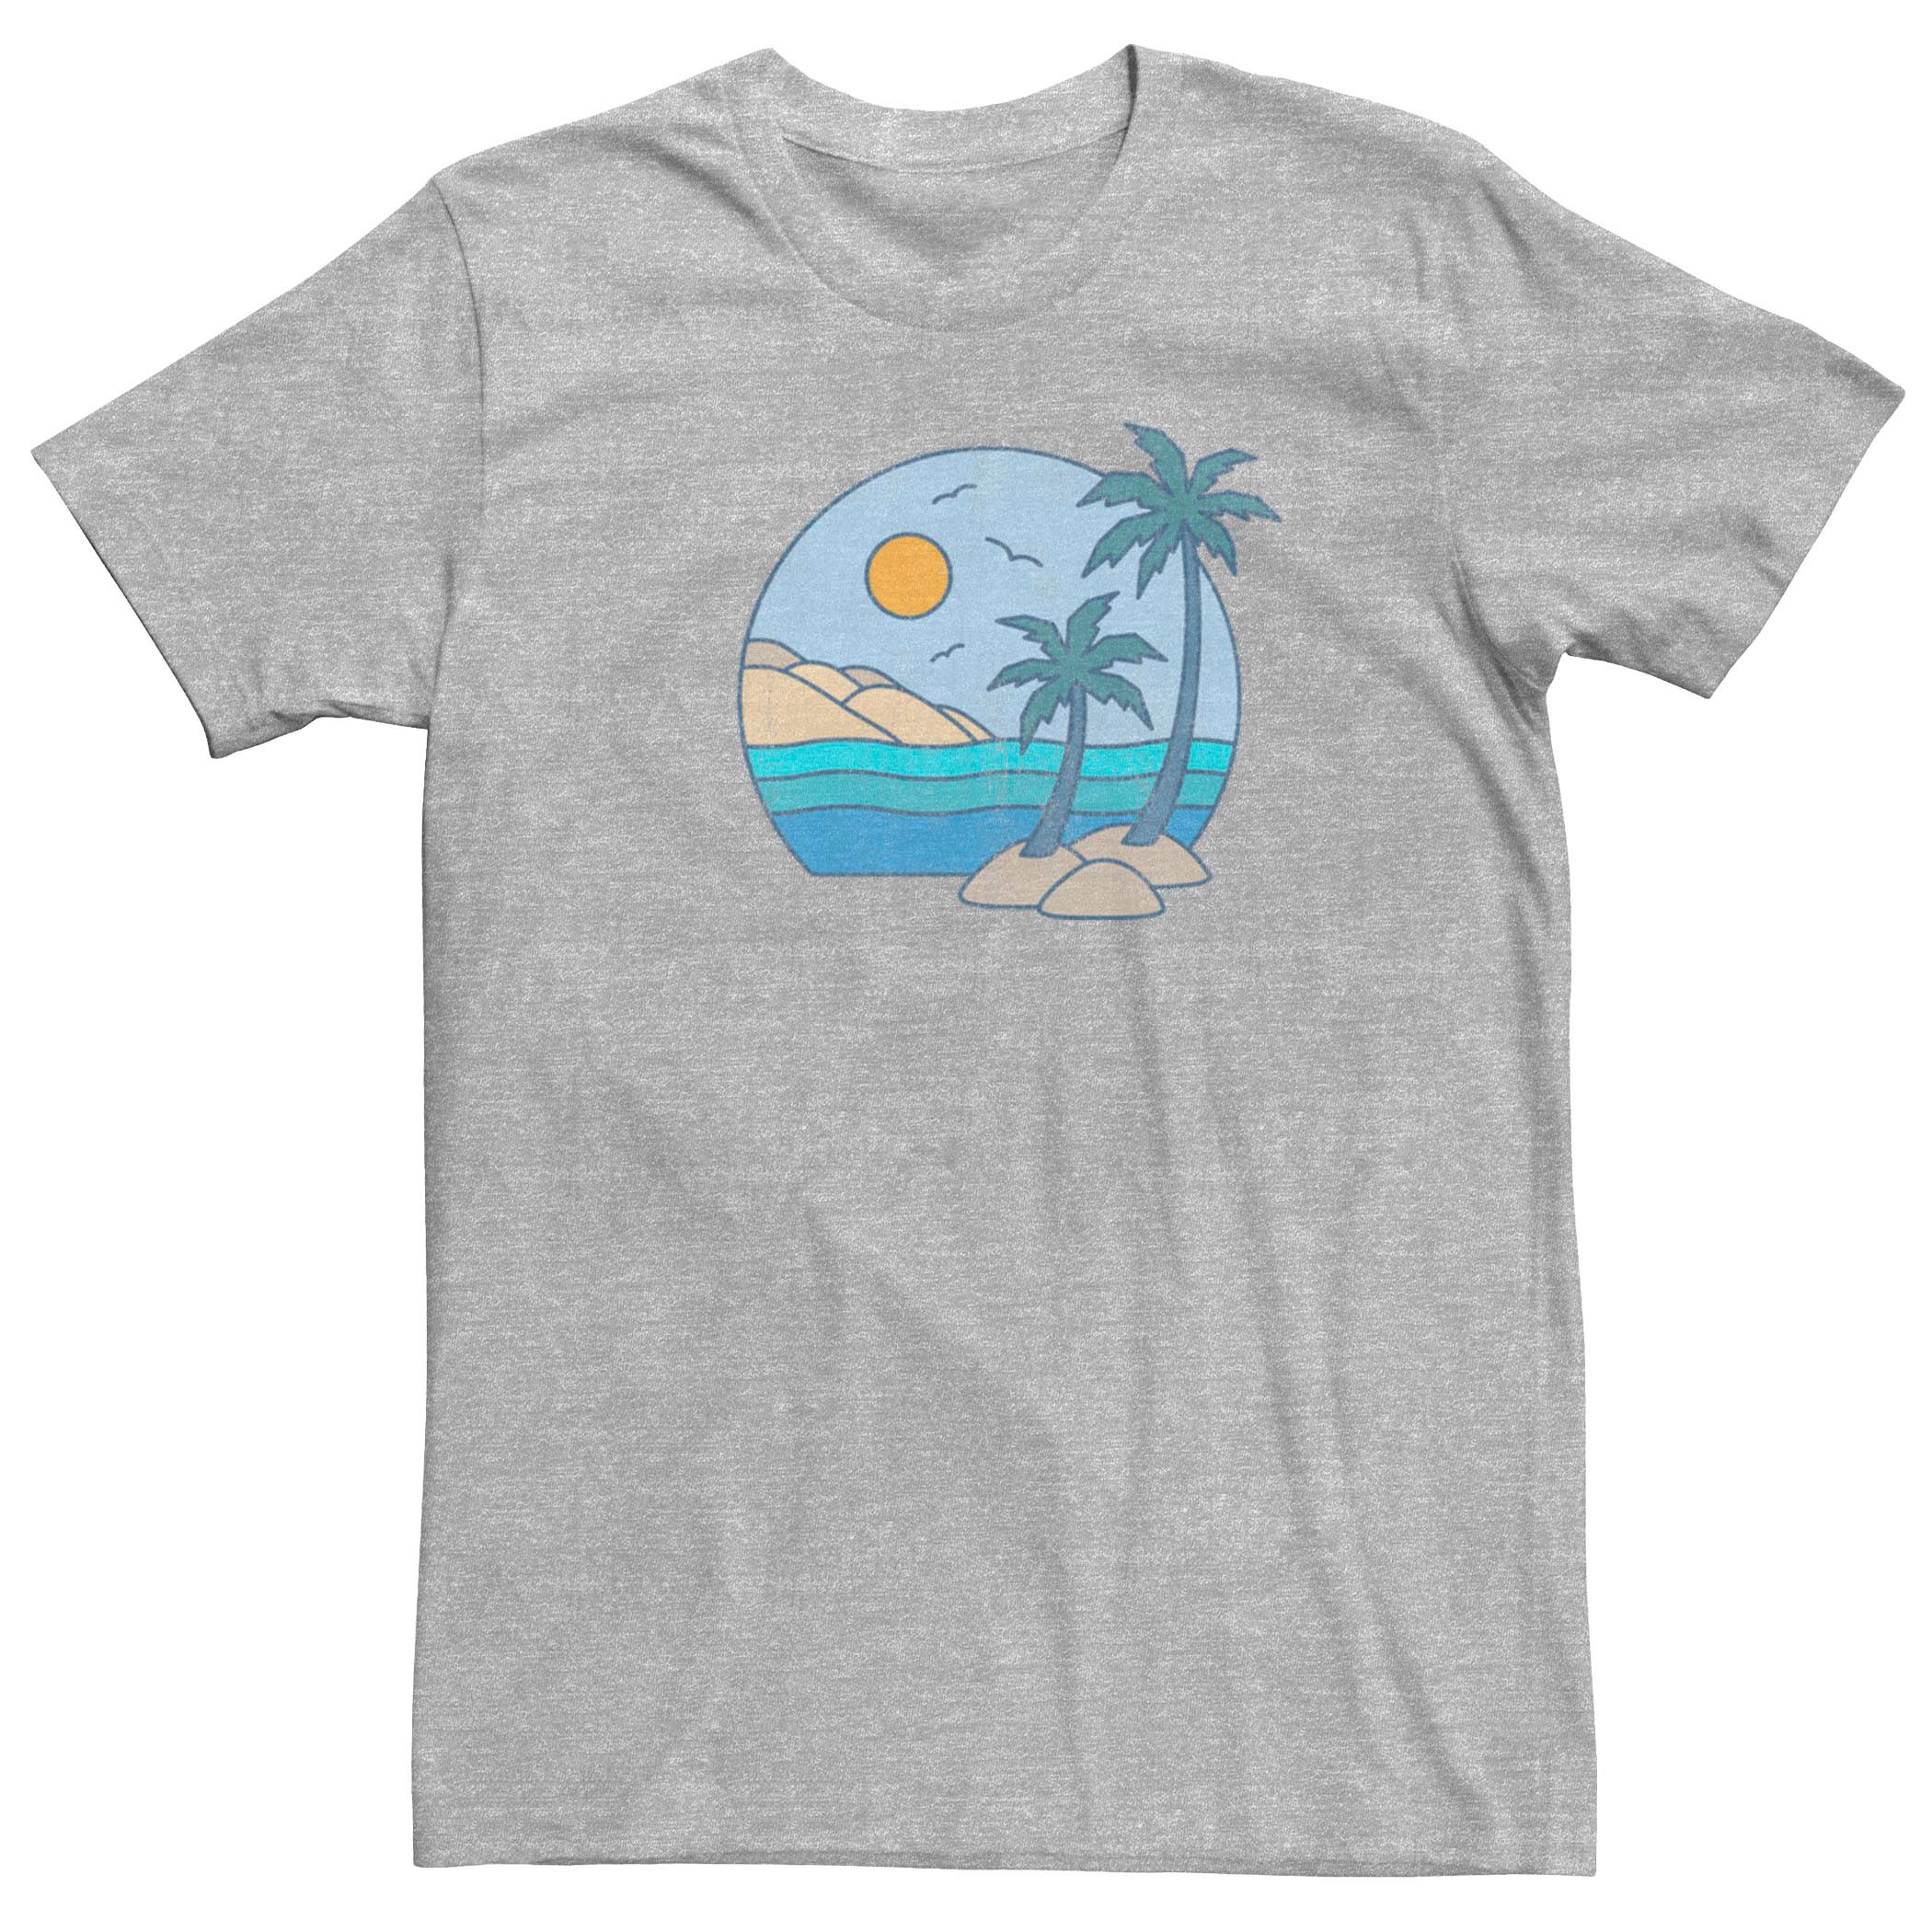 Мужская футболка Island Simple View Fifth Sun